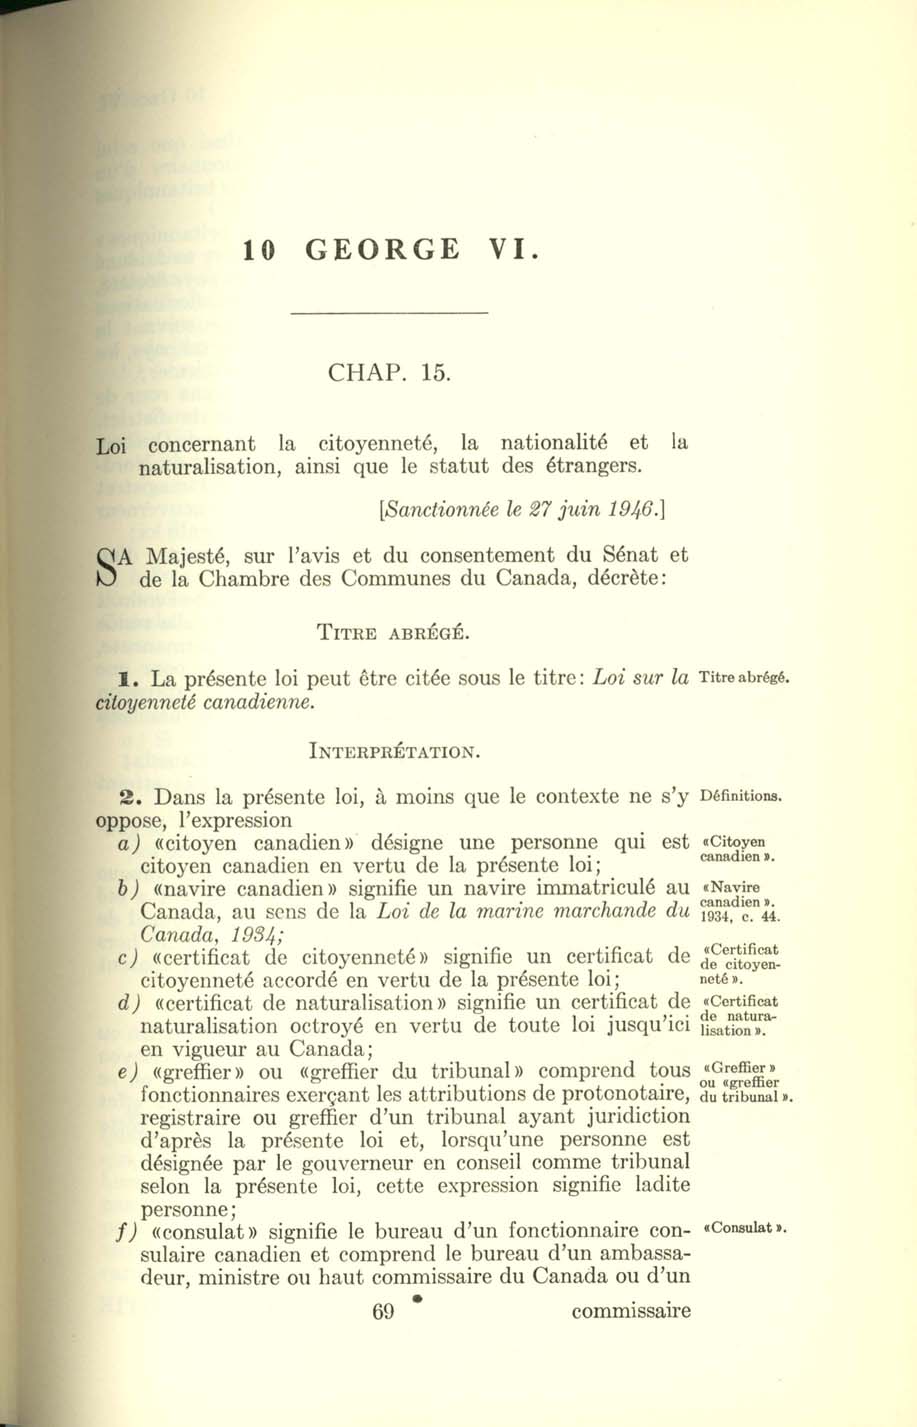 Chap. 15 Page 69 Loi sur la citoyenneté canadienne, 1947